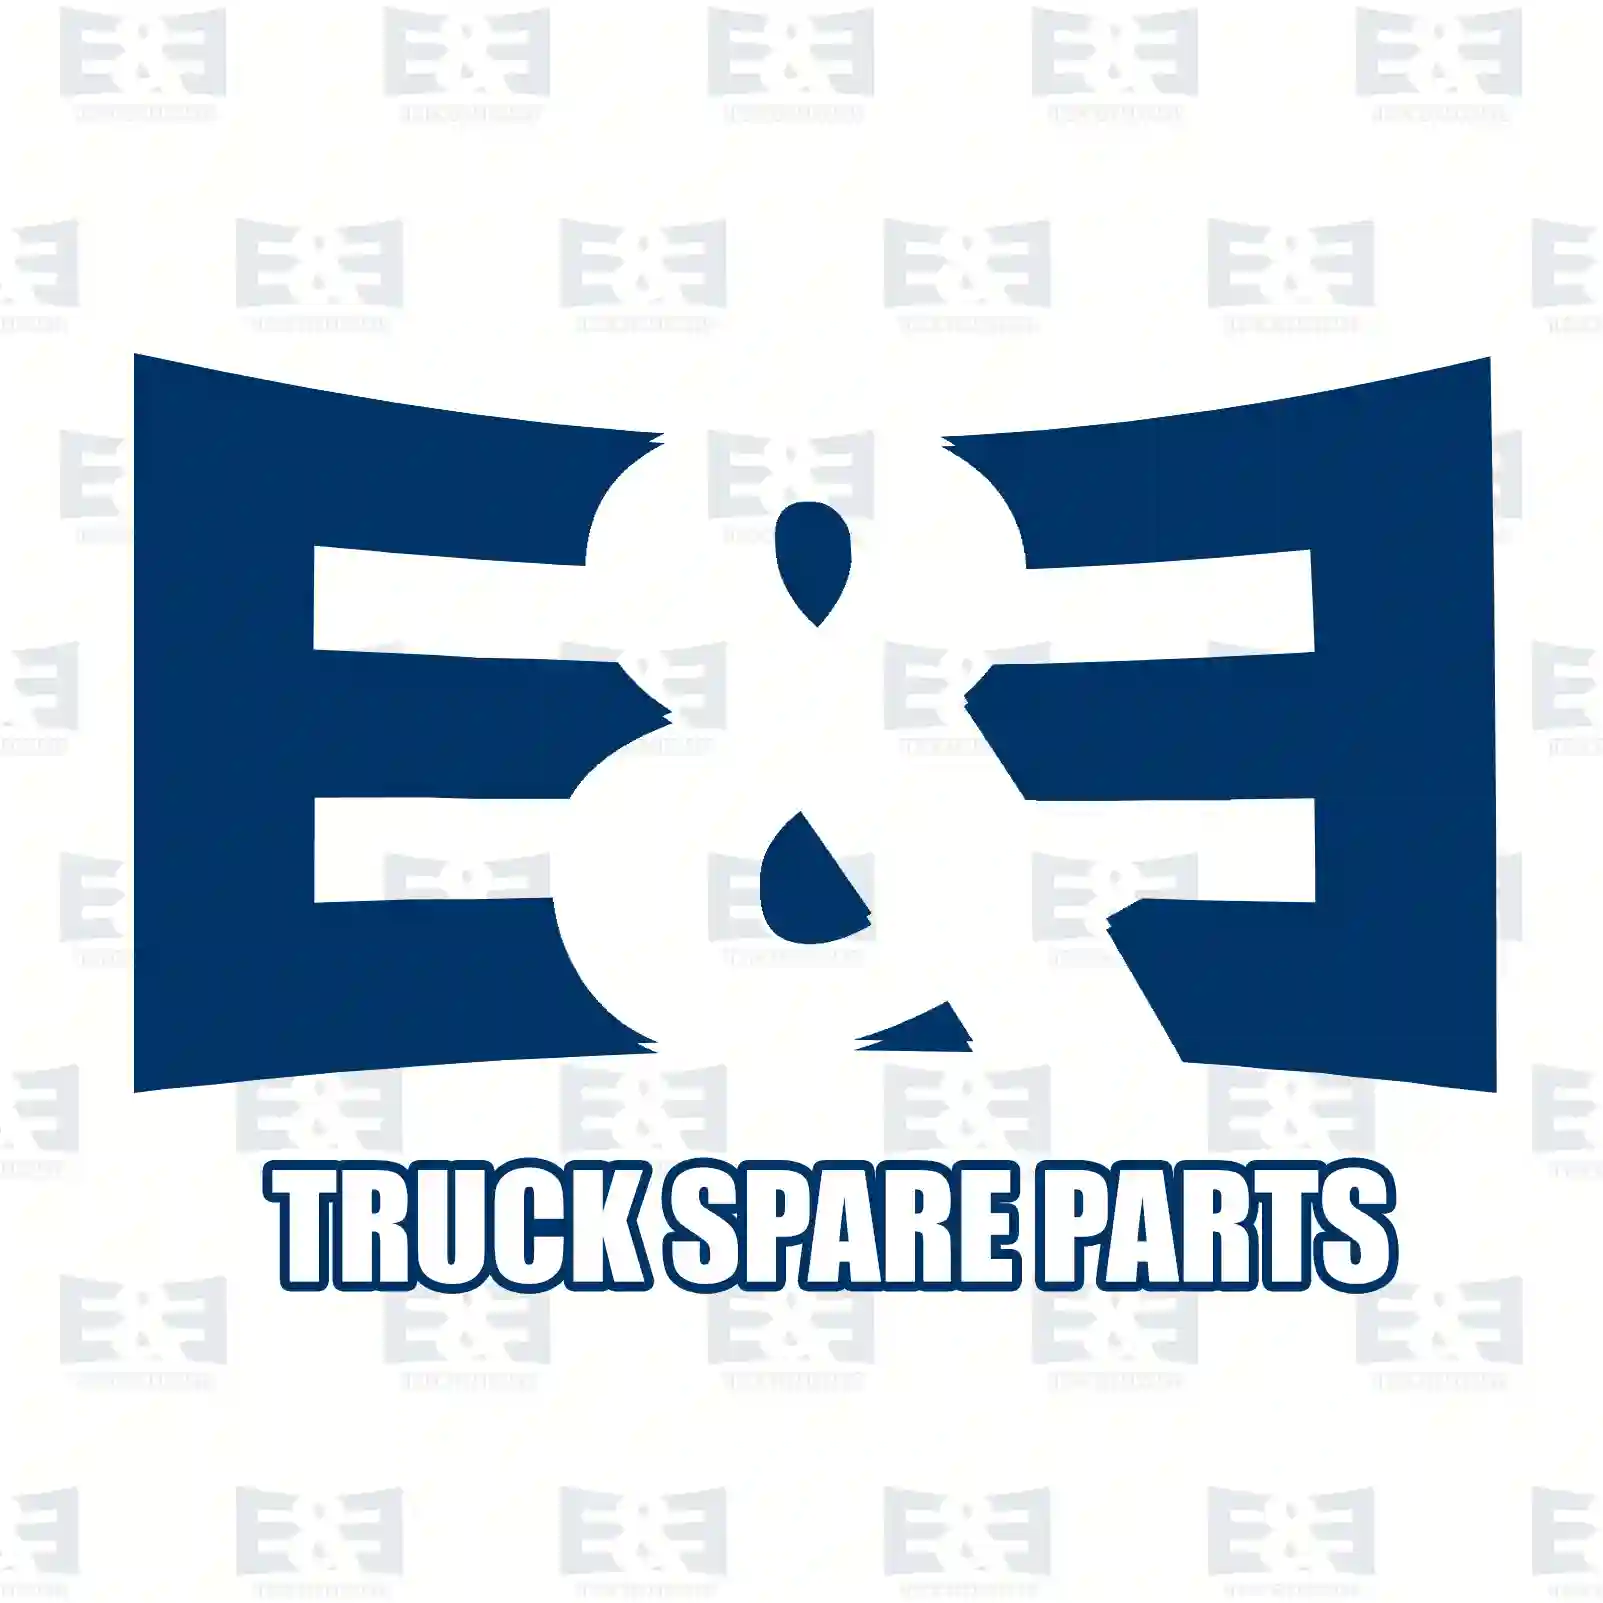 Push-in-connector, 2E2294392, 1369865, ZG50583-0008 ||  2E2294392 E&E Truck Spare Parts | Truck Spare Parts, Auotomotive Spare Parts Push-in-connector, 2E2294392, 1369865, ZG50583-0008 ||  2E2294392 E&E Truck Spare Parts | Truck Spare Parts, Auotomotive Spare Parts